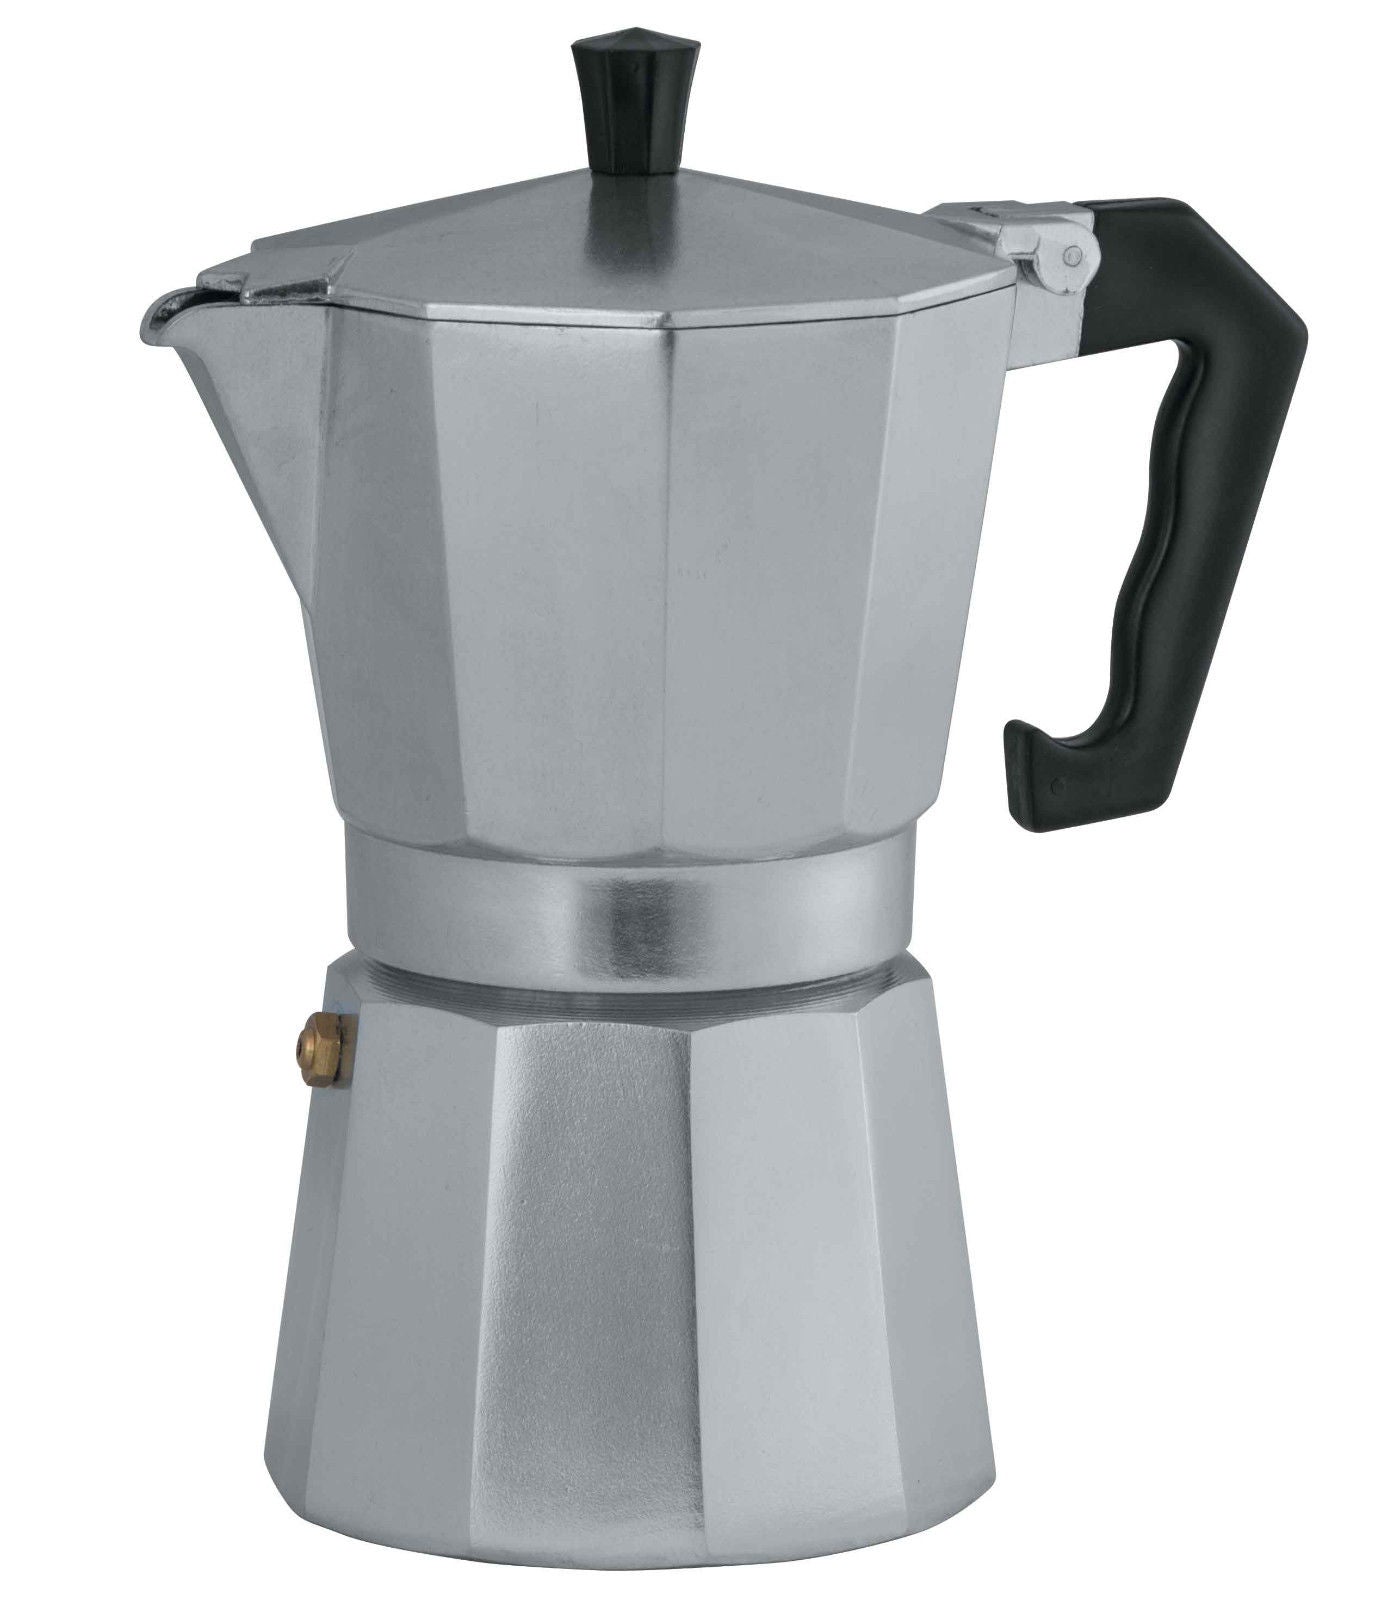 Avanti Classic Pro Espresso Coffee Maker 9 Cup - 900ml